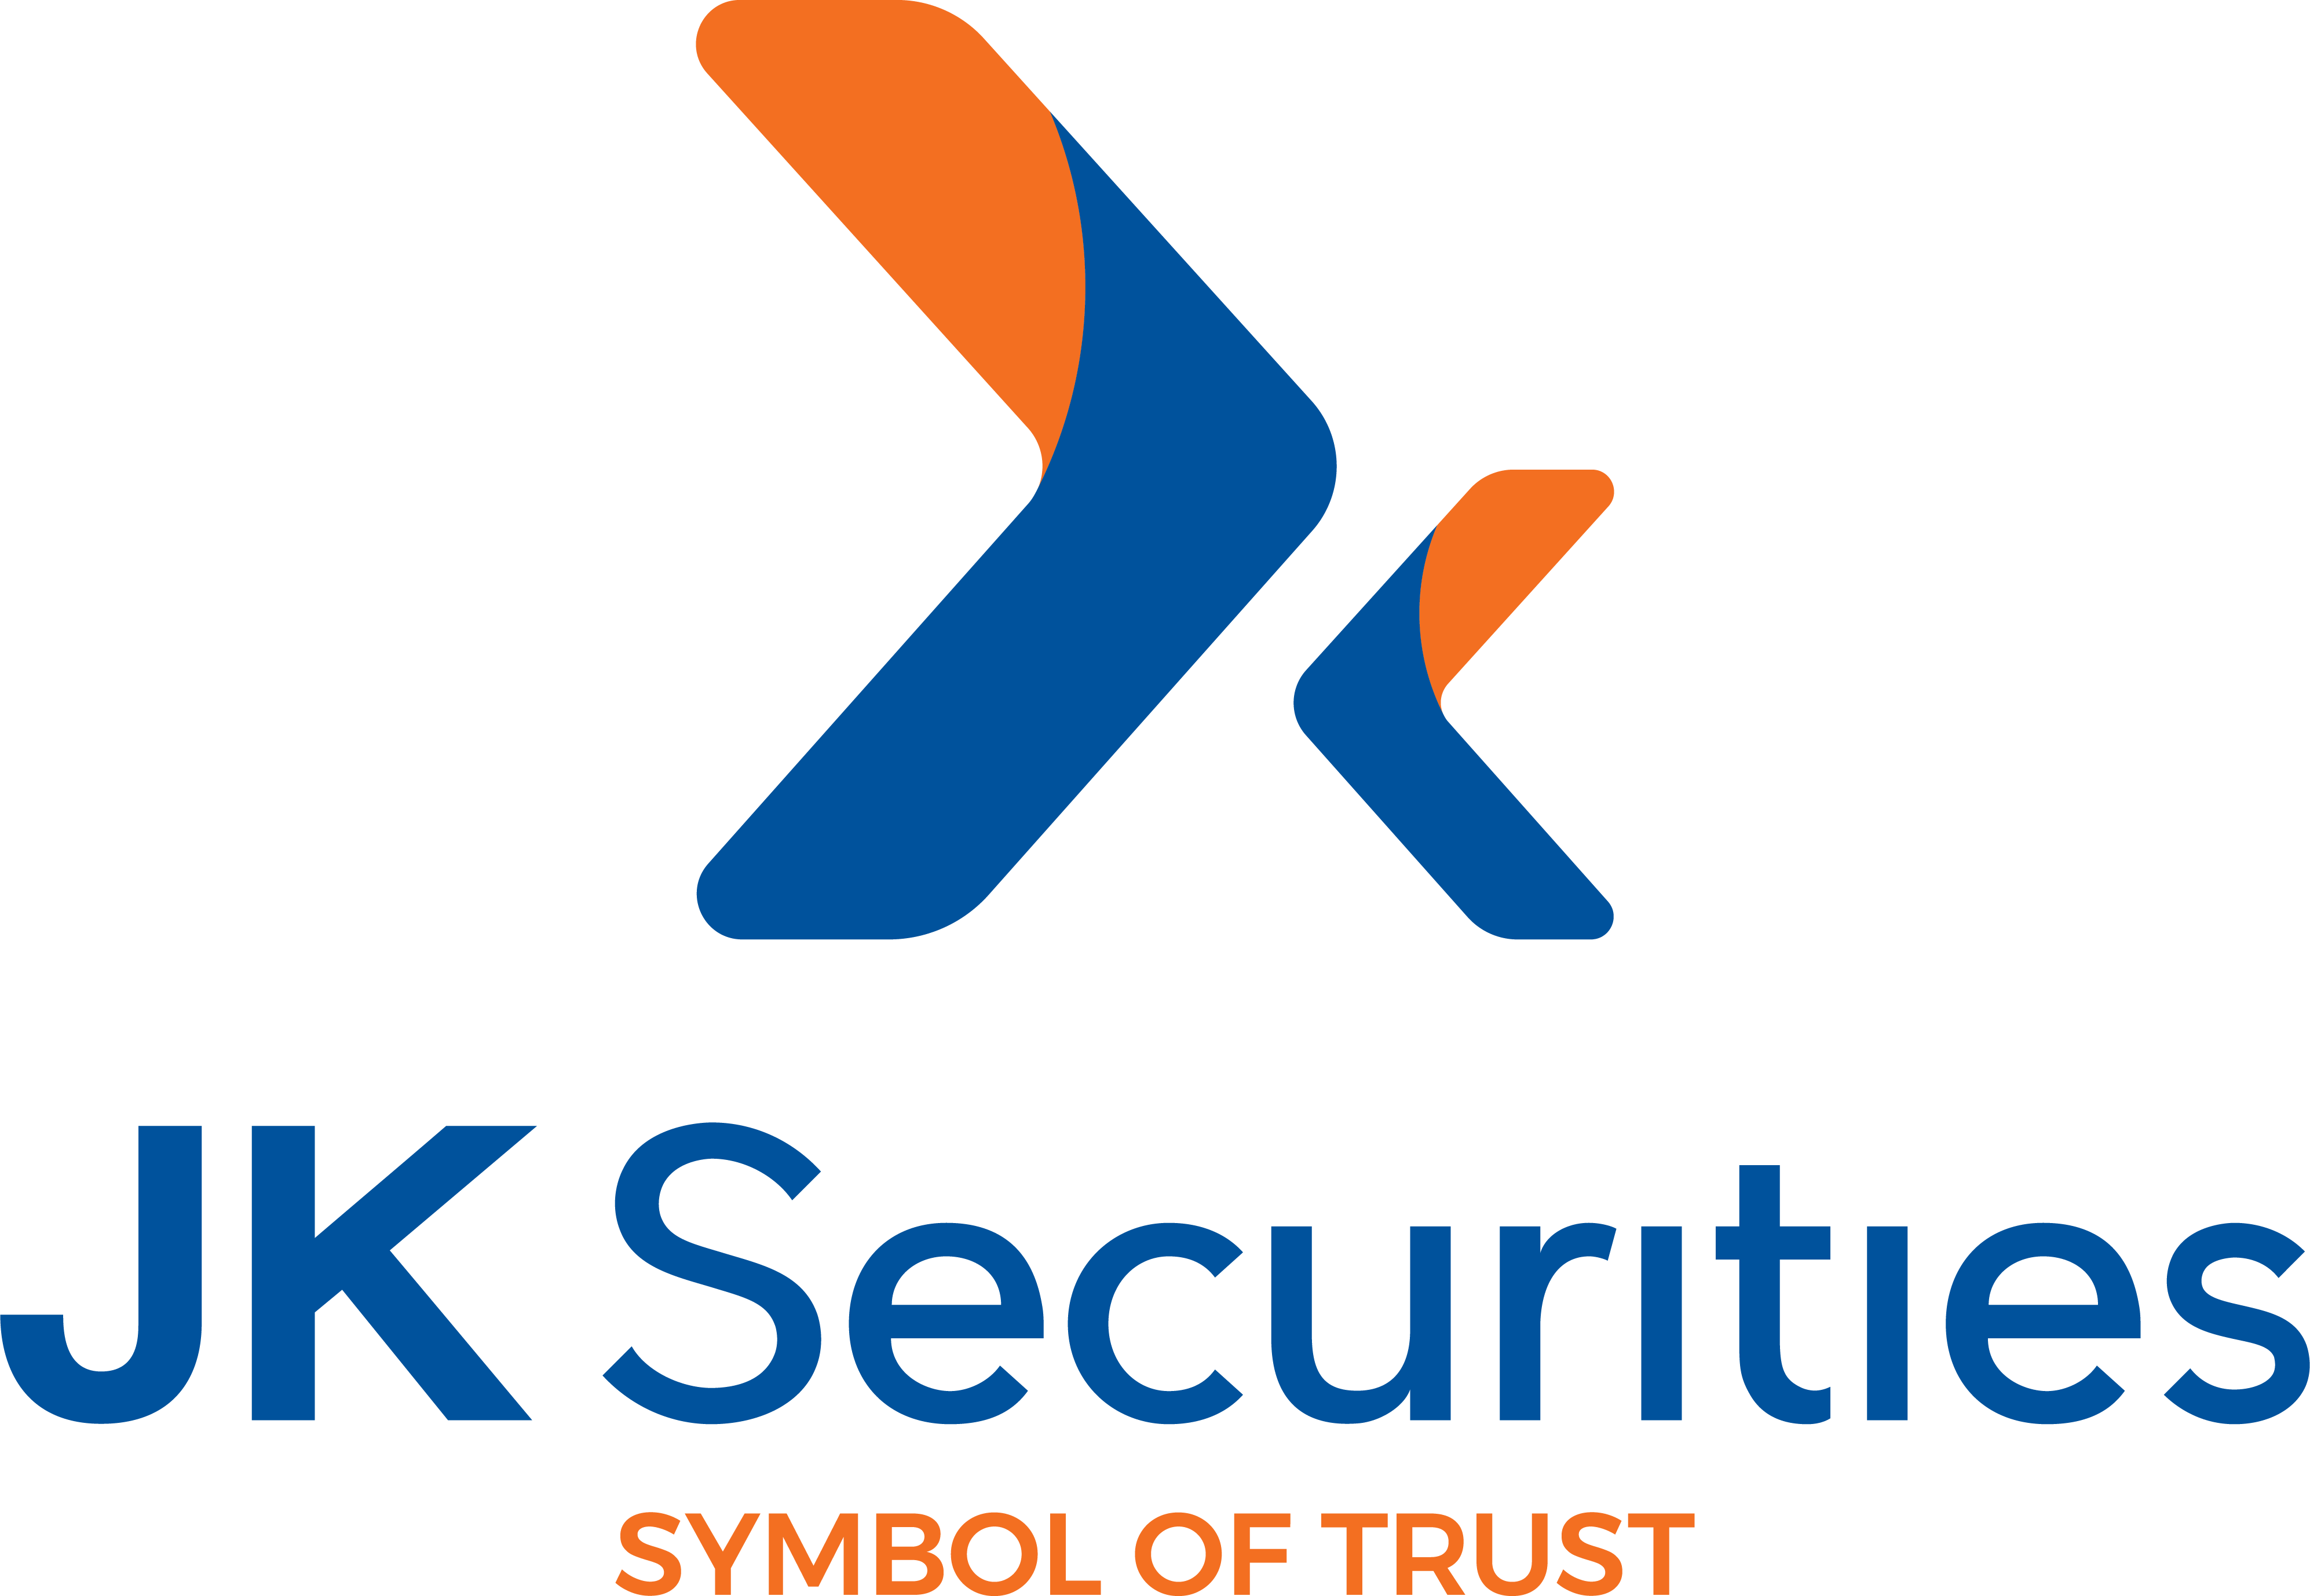 jk securities